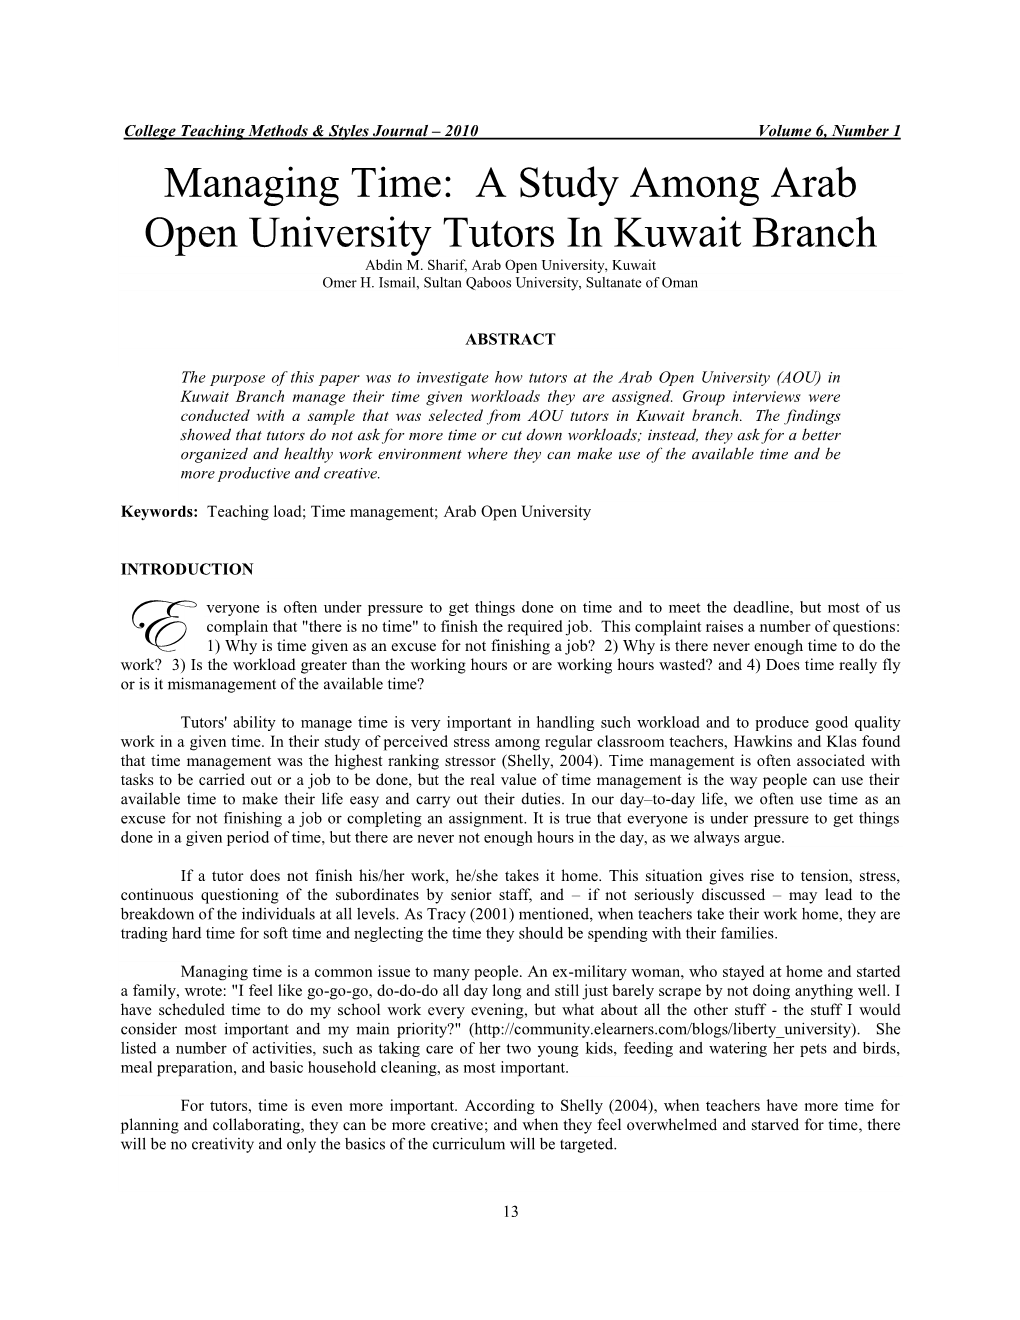 A Study Among Arab Open University Tutors in Kuwait Branch Abdin M